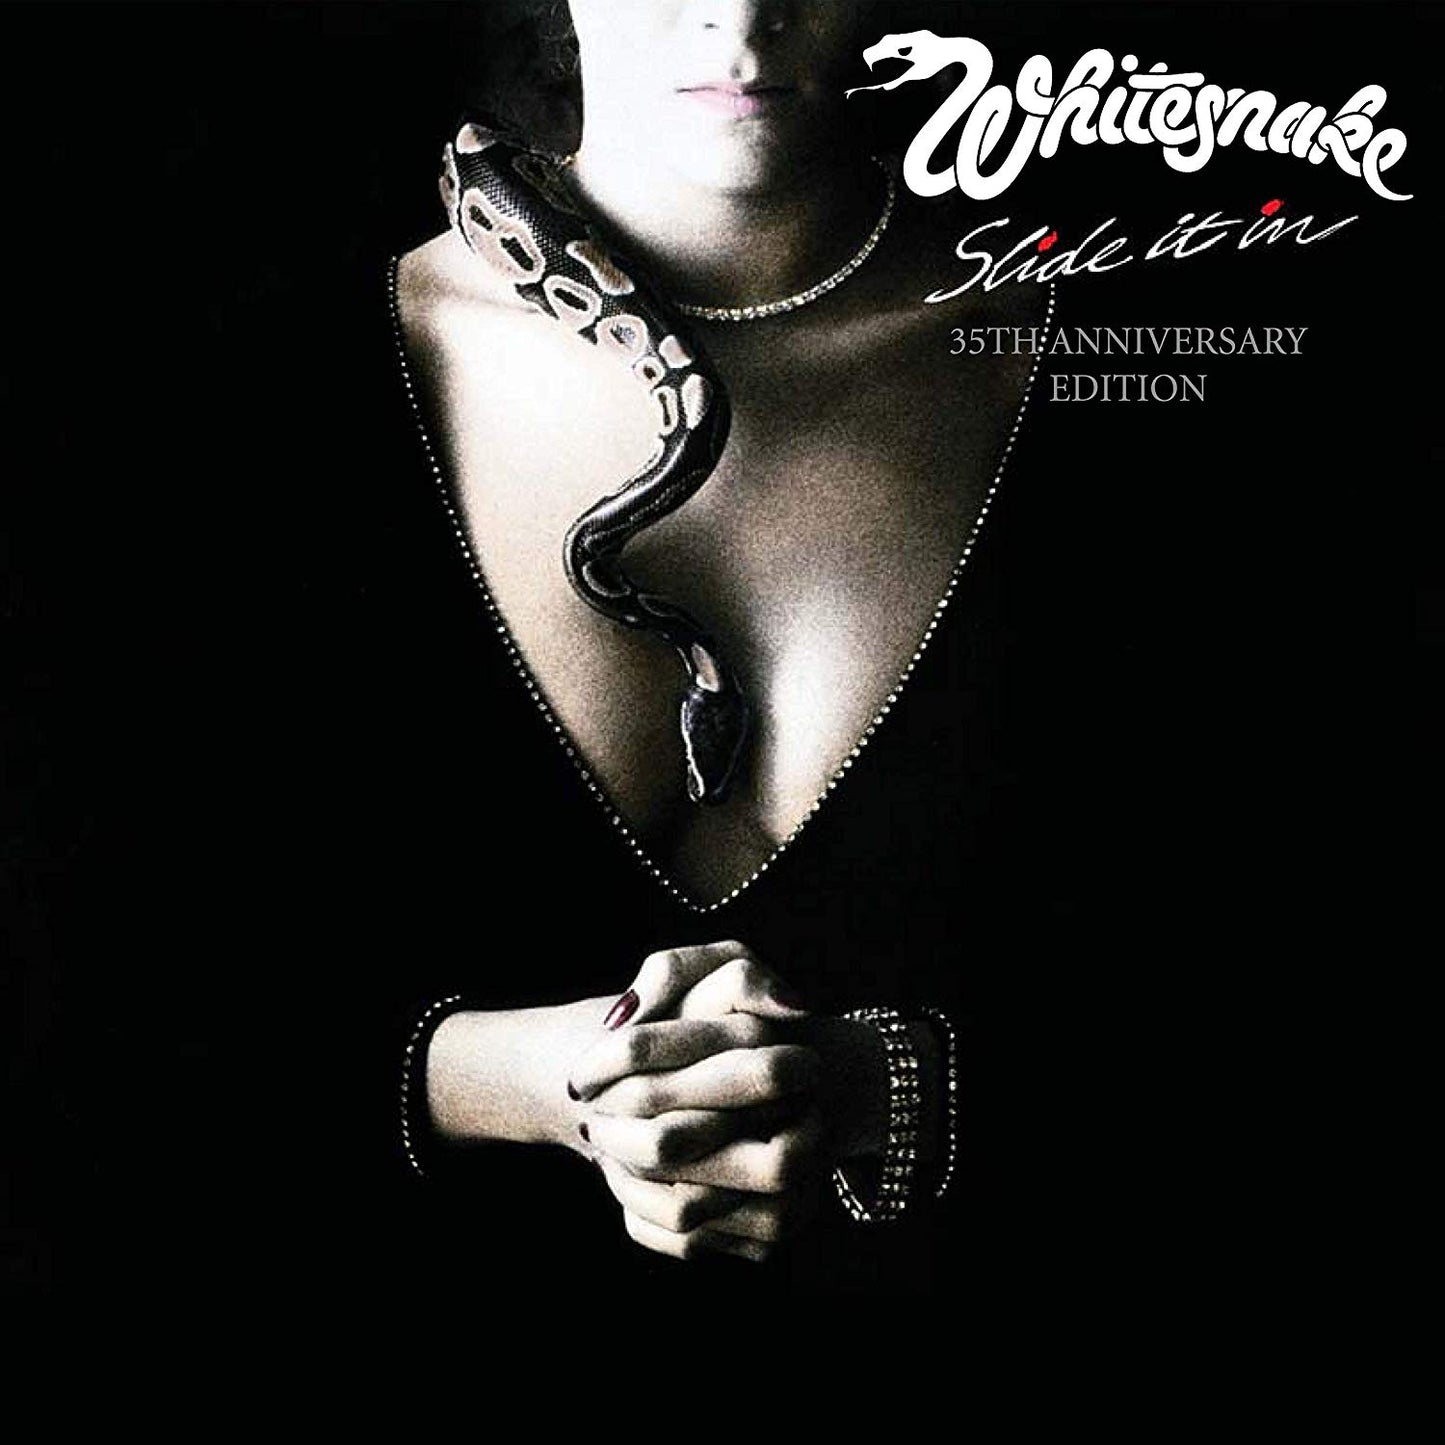 Whitesnake - Slide It In 35th Anniversary Edition 2CD